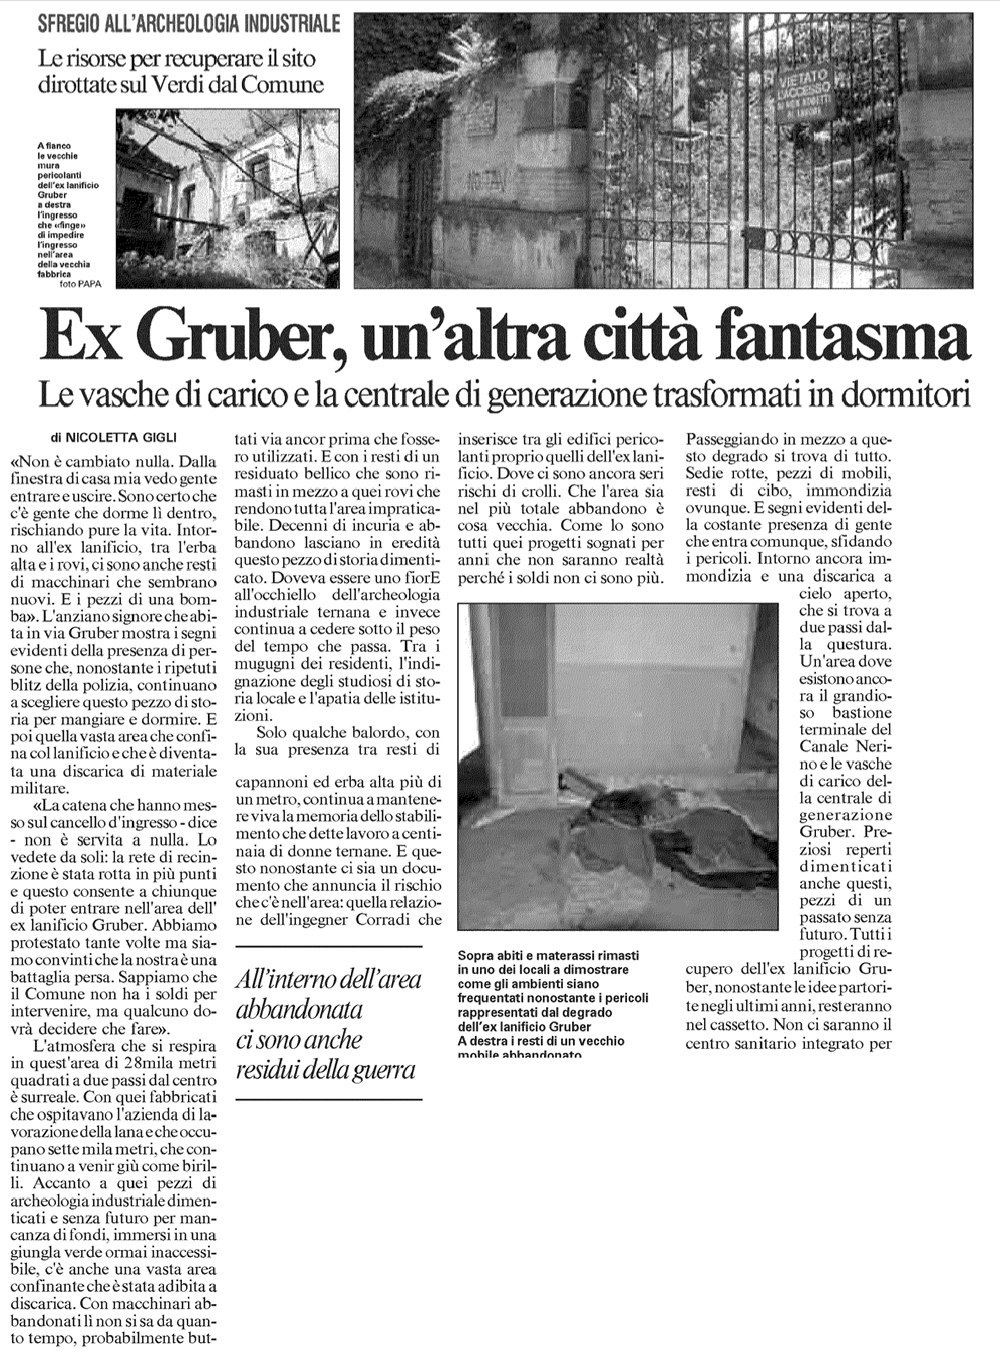 Il Messaggero 07-07-2012 p49-1